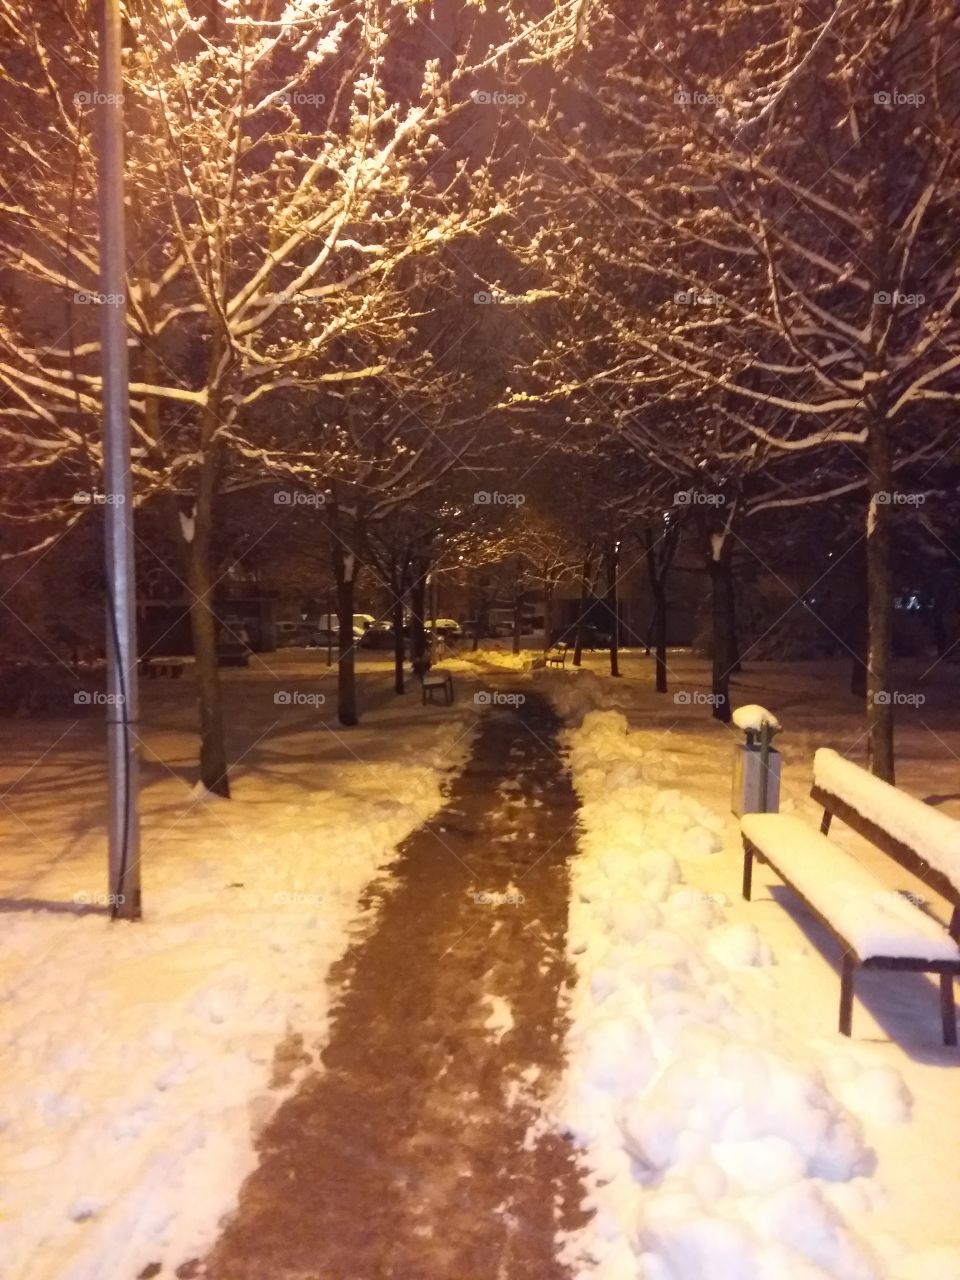 Snowy park